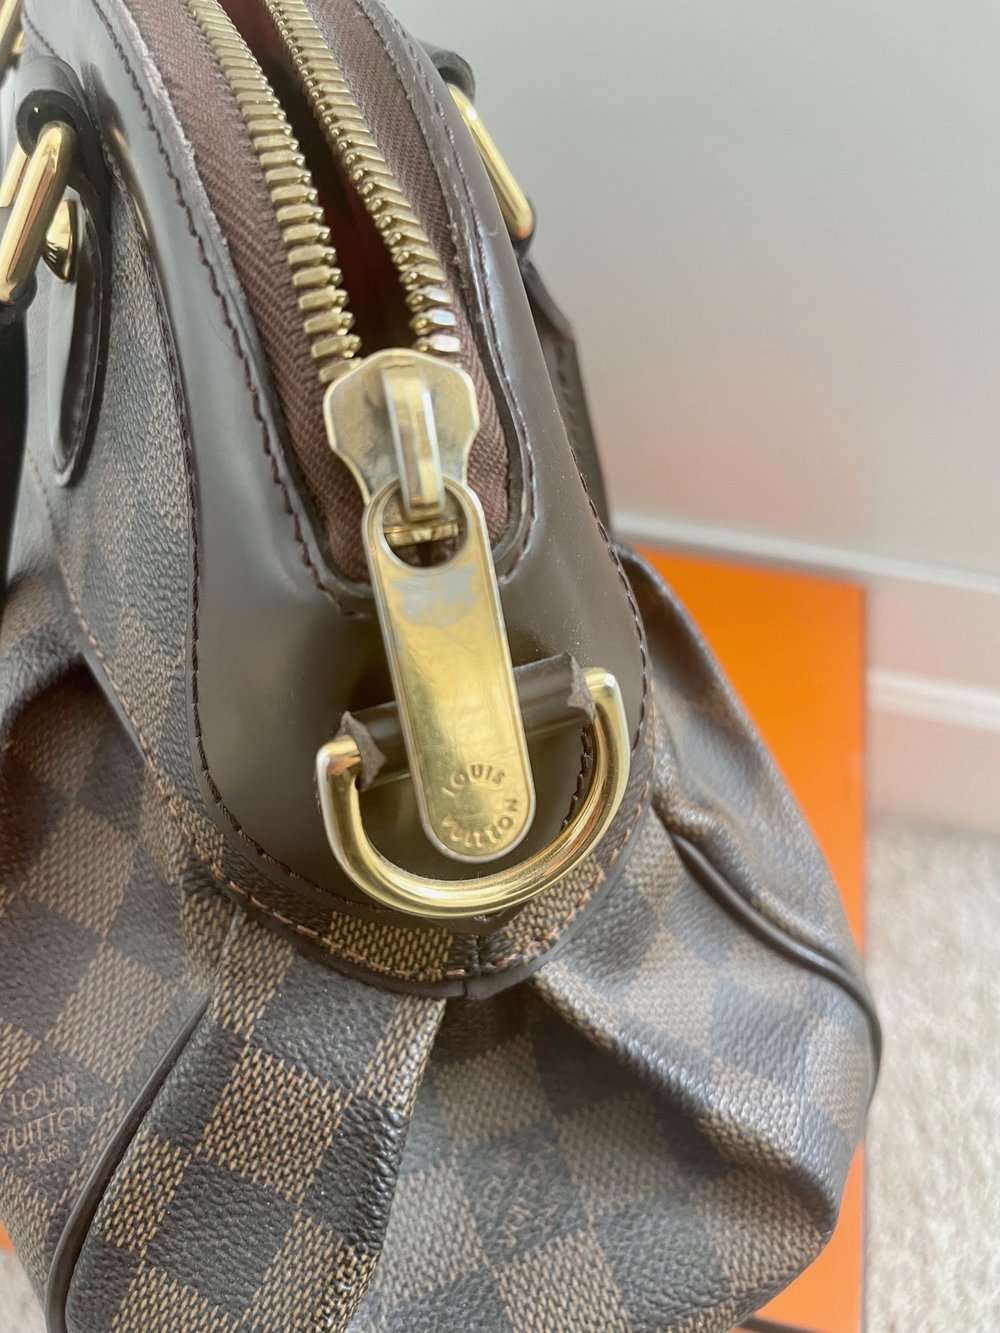 Louis Vuitton Damier Trevi PM shoulder bag